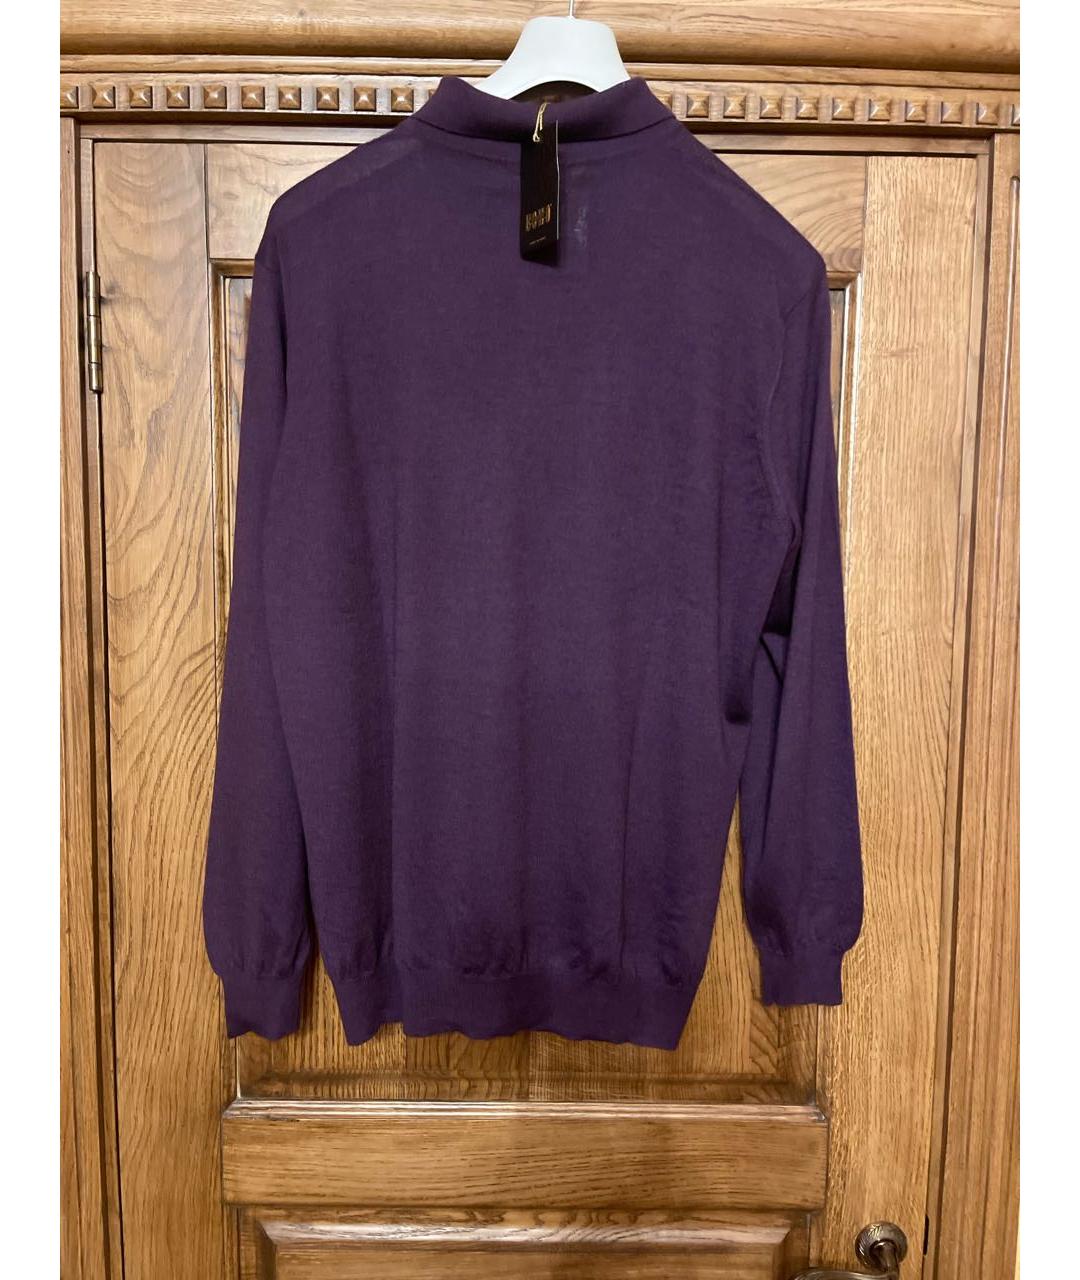 UOMO COLLEZIONI Фиолетовый кашемировый джемпер / свитер, фото 2